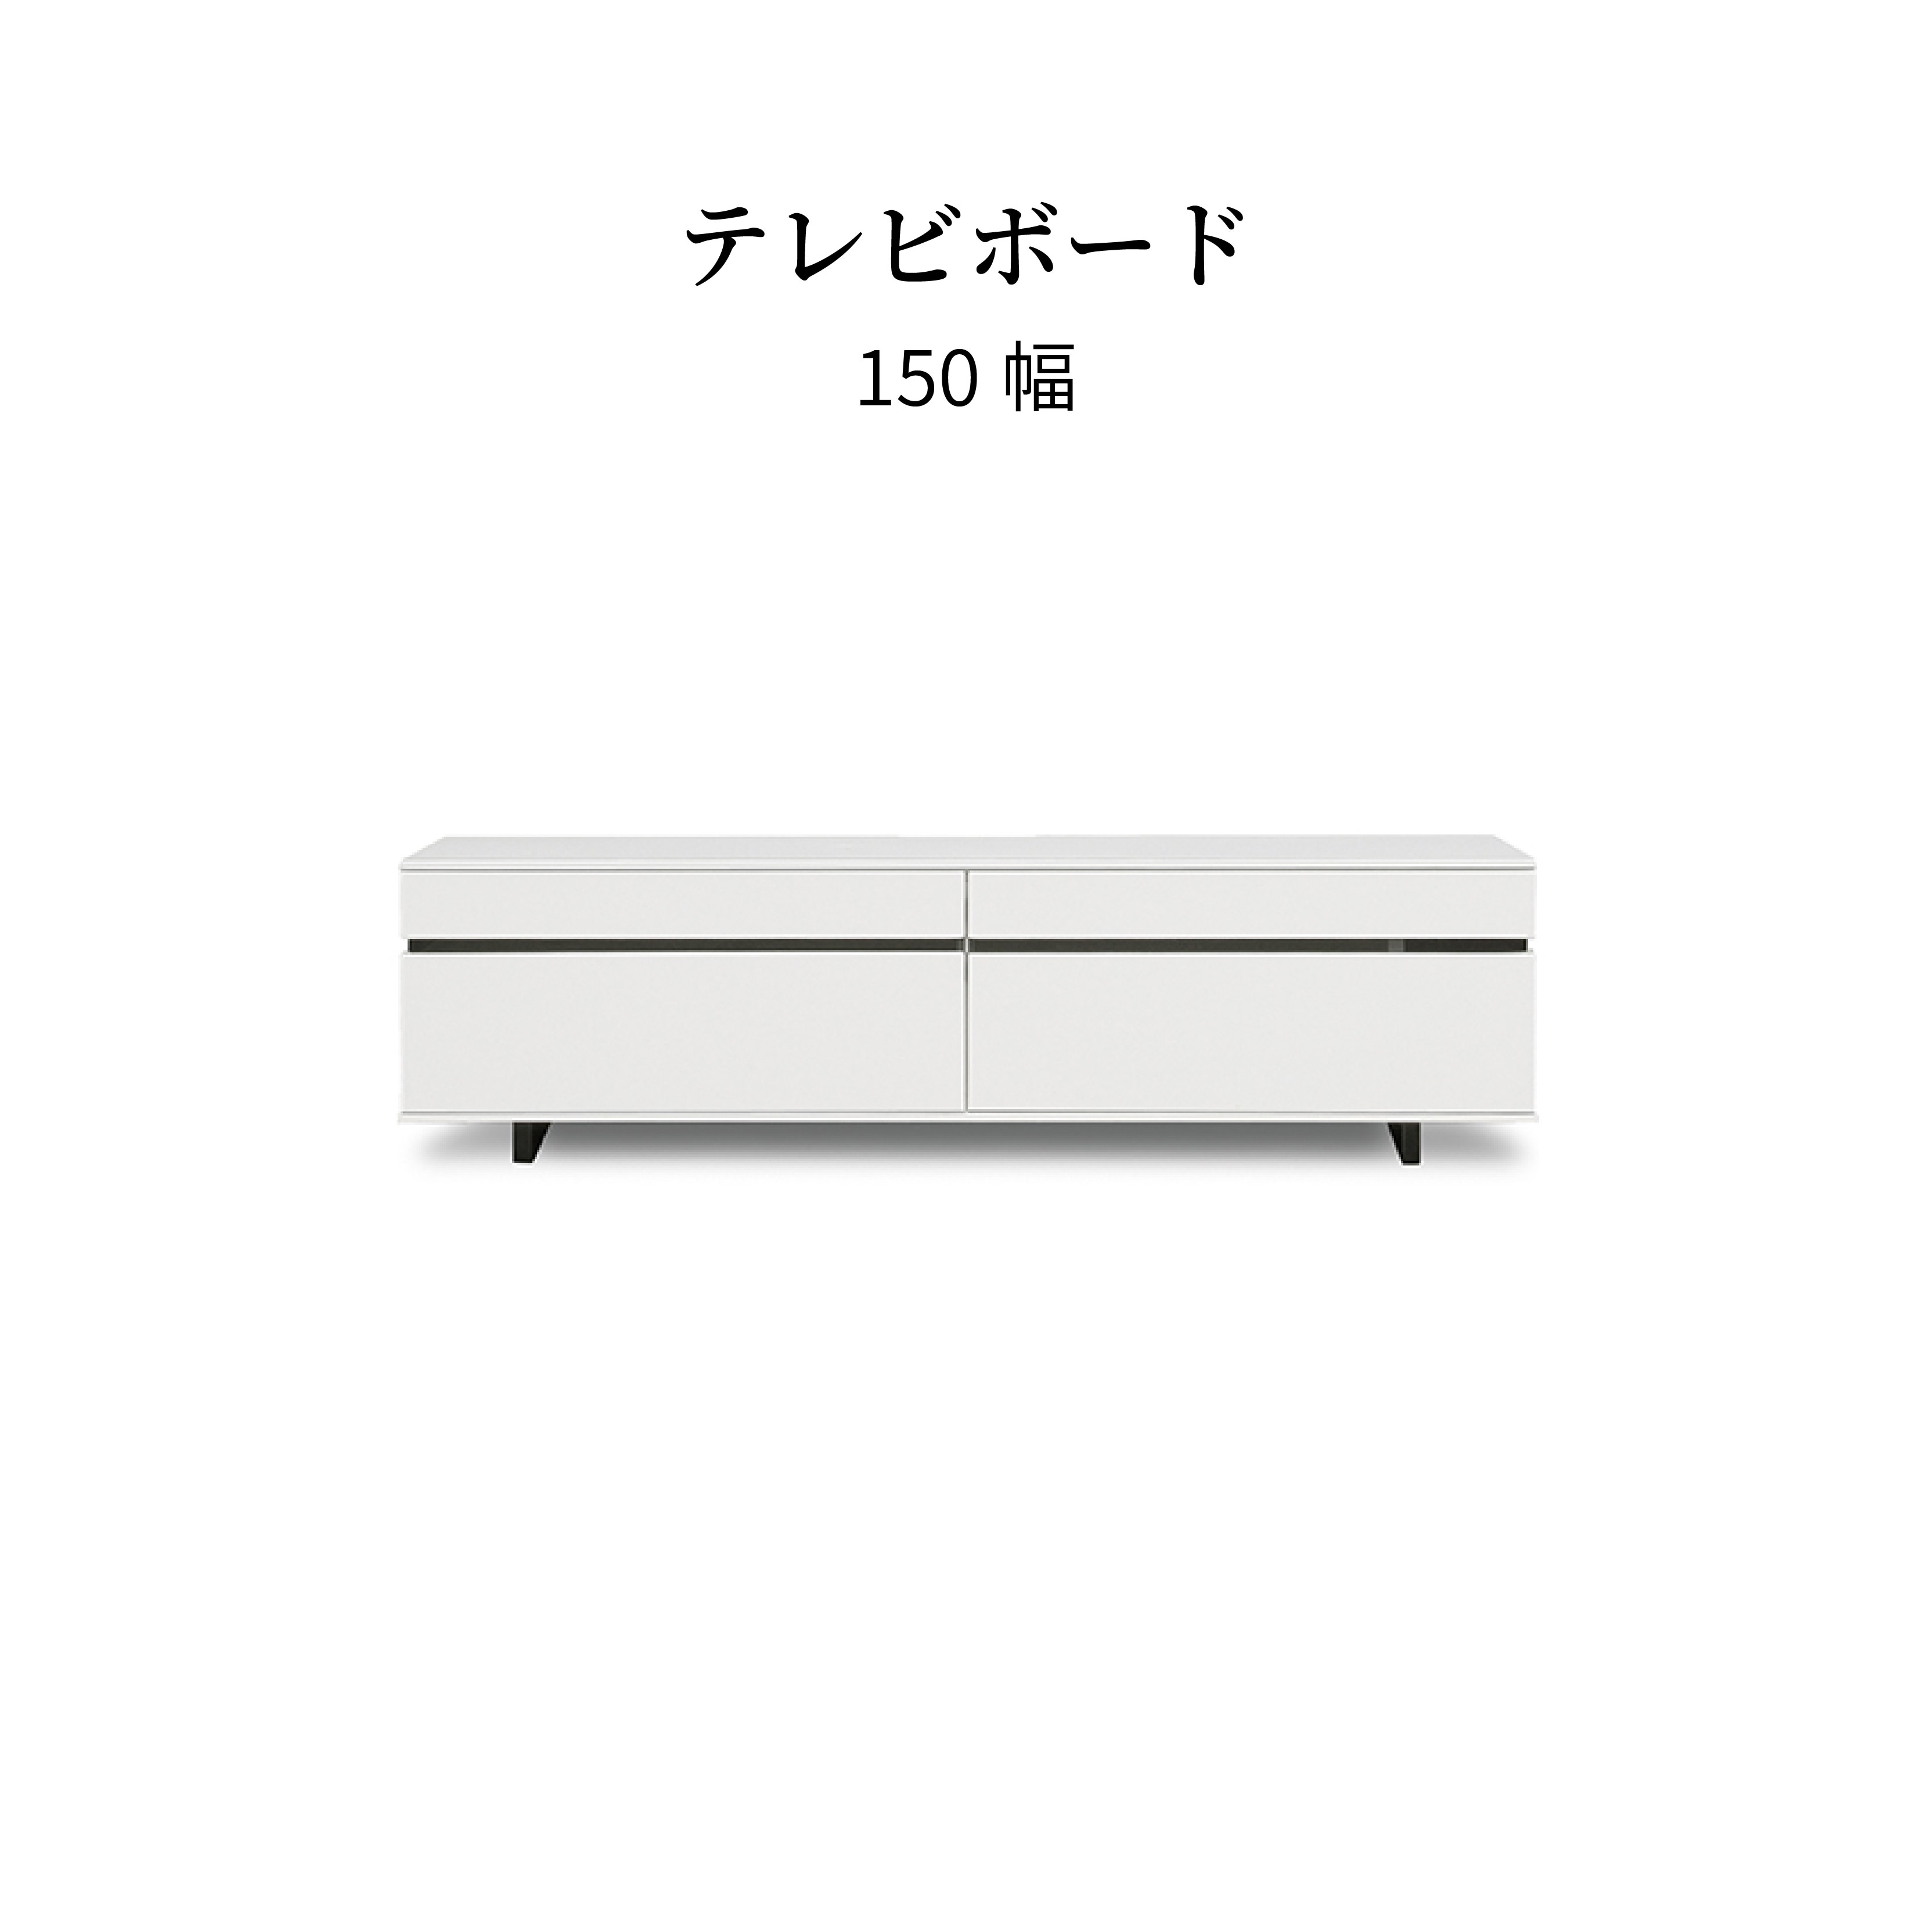 テレビボード ホワイト 収納付き NS 150 TVB